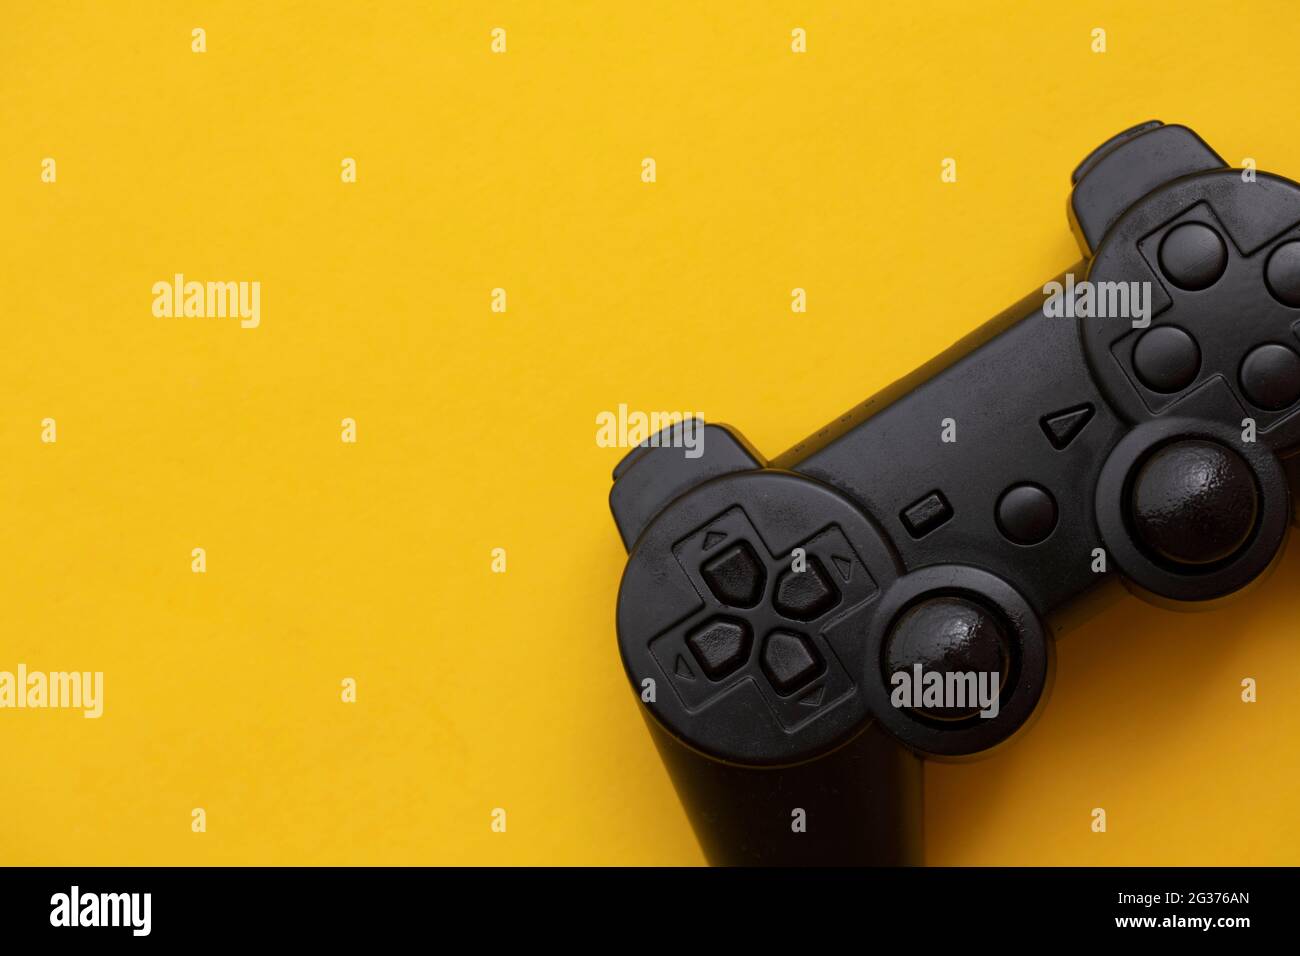 Dispositivo de video juego negro sobre fondo amarillo brillante Foto de stock